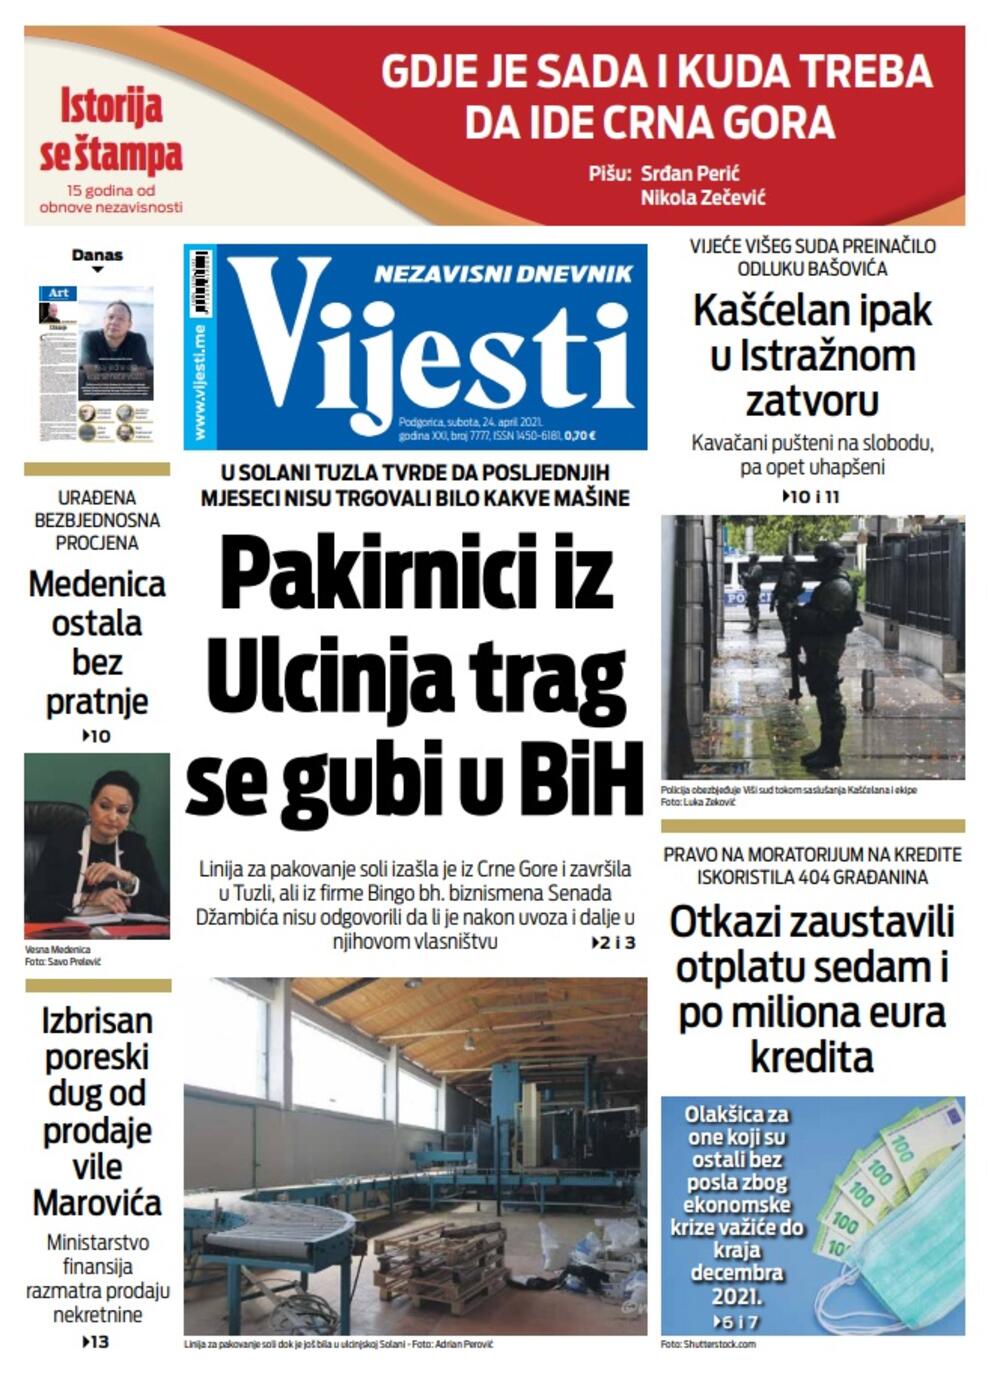 Naslovna strana "Vijesti" za subotu 24. april 2021. godine, Foto: Vijesti